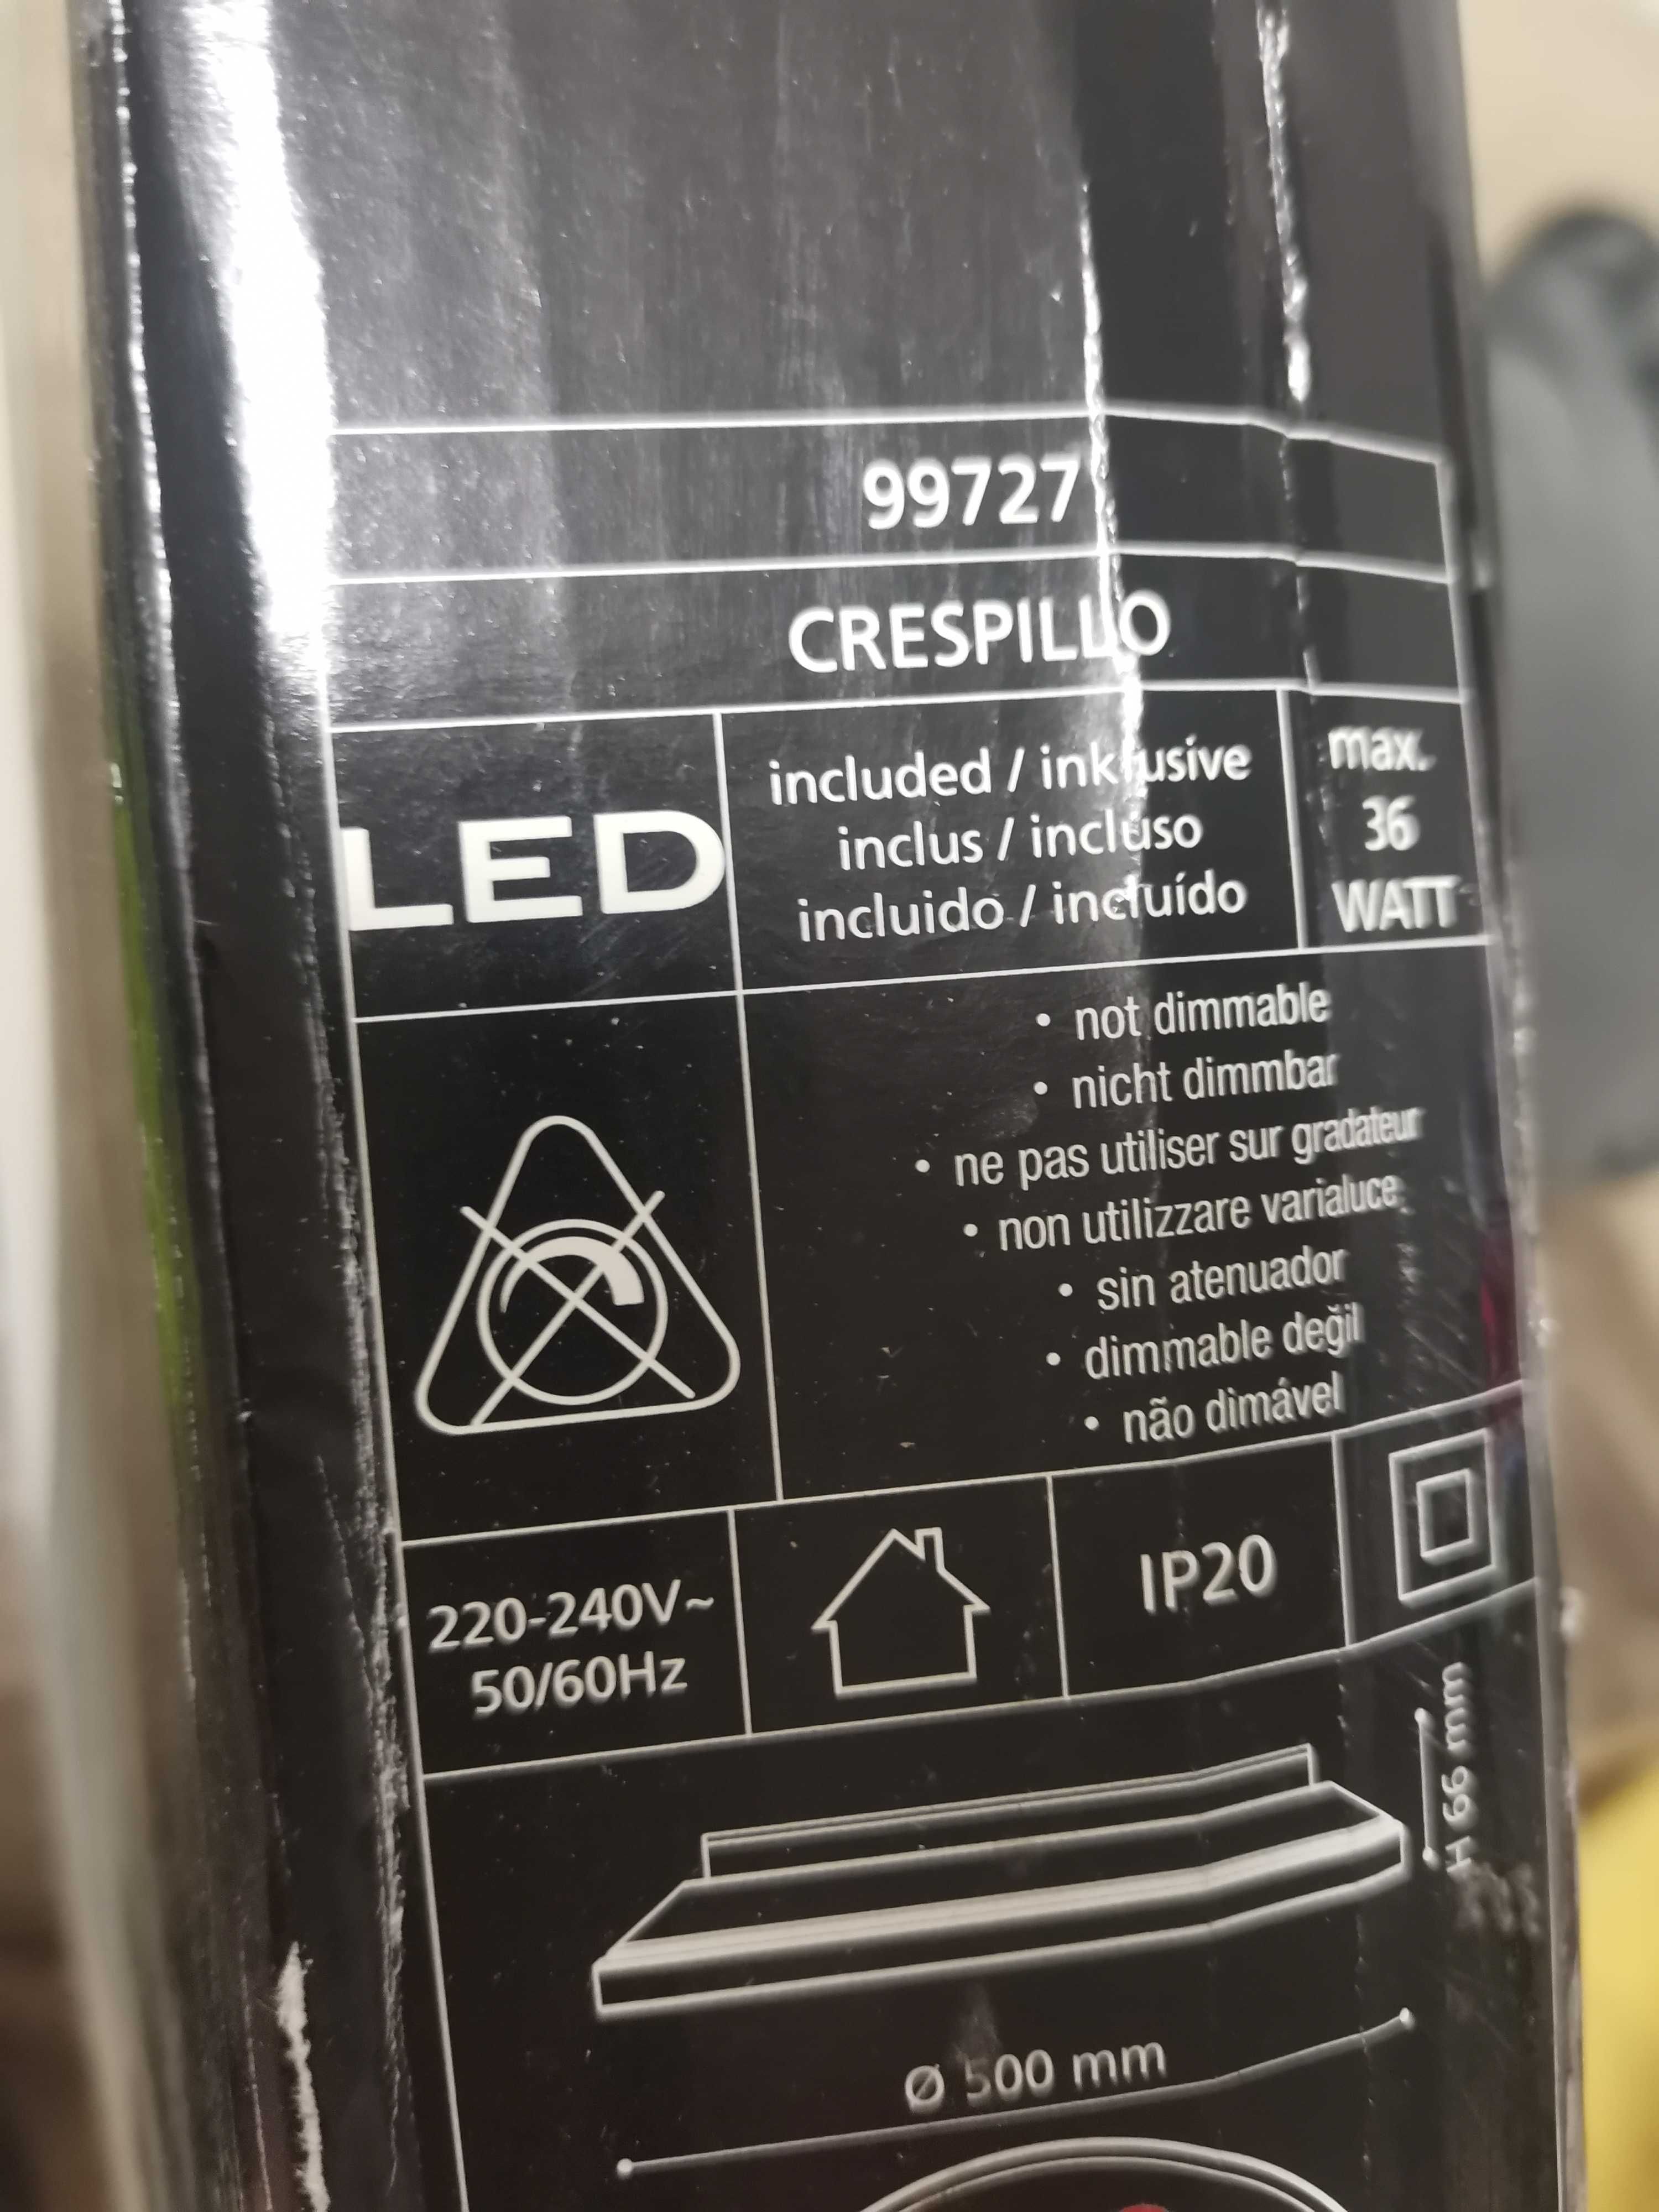 CRESPILLO oprawa natynkowa 99727 EGLO LED